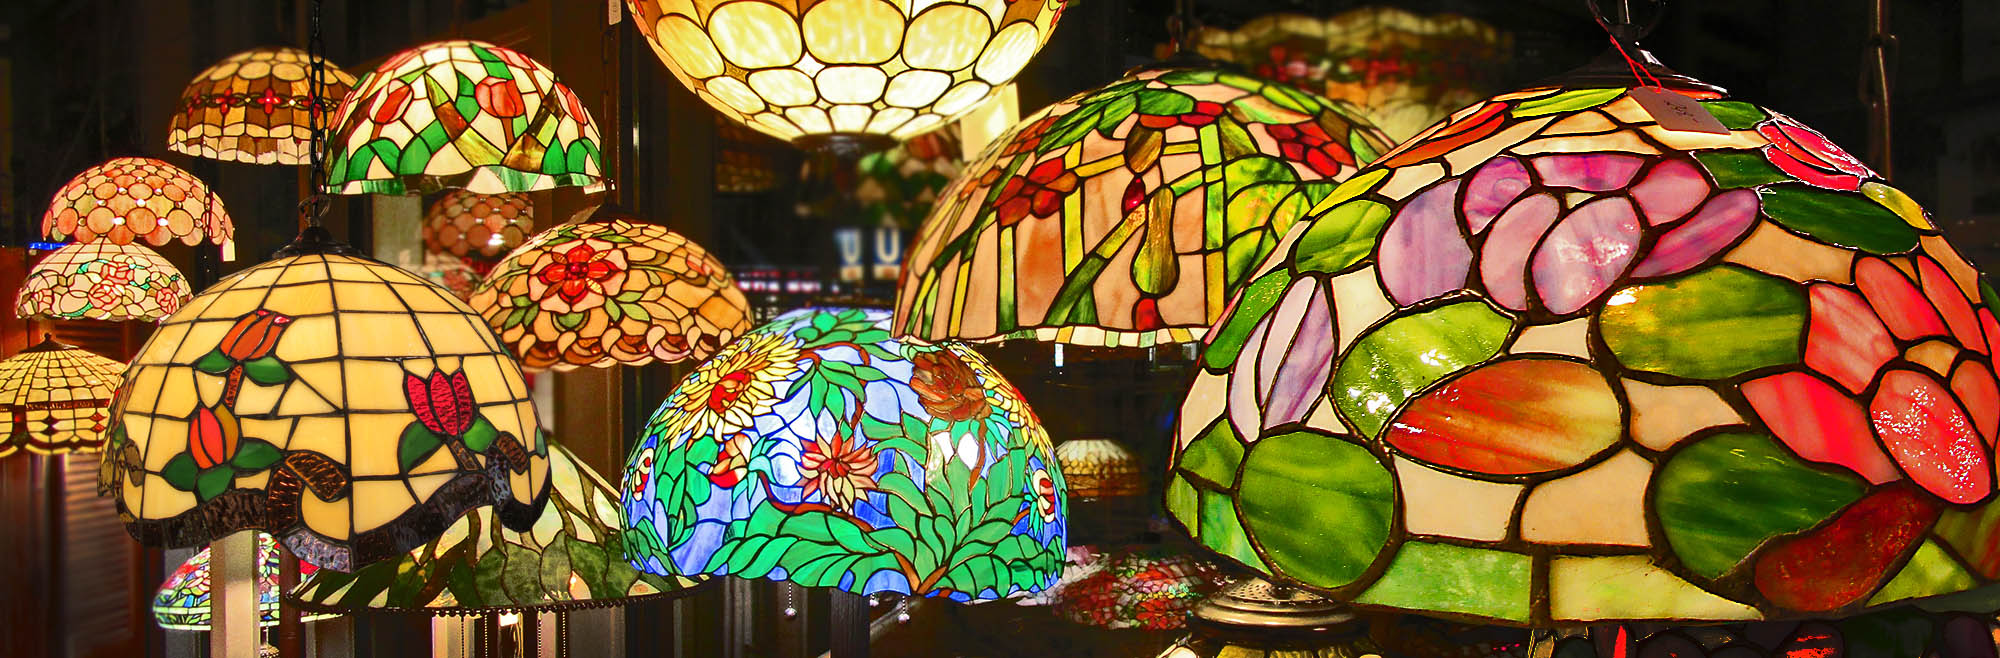 Tiffany-Lampen im Naturkaufhaus